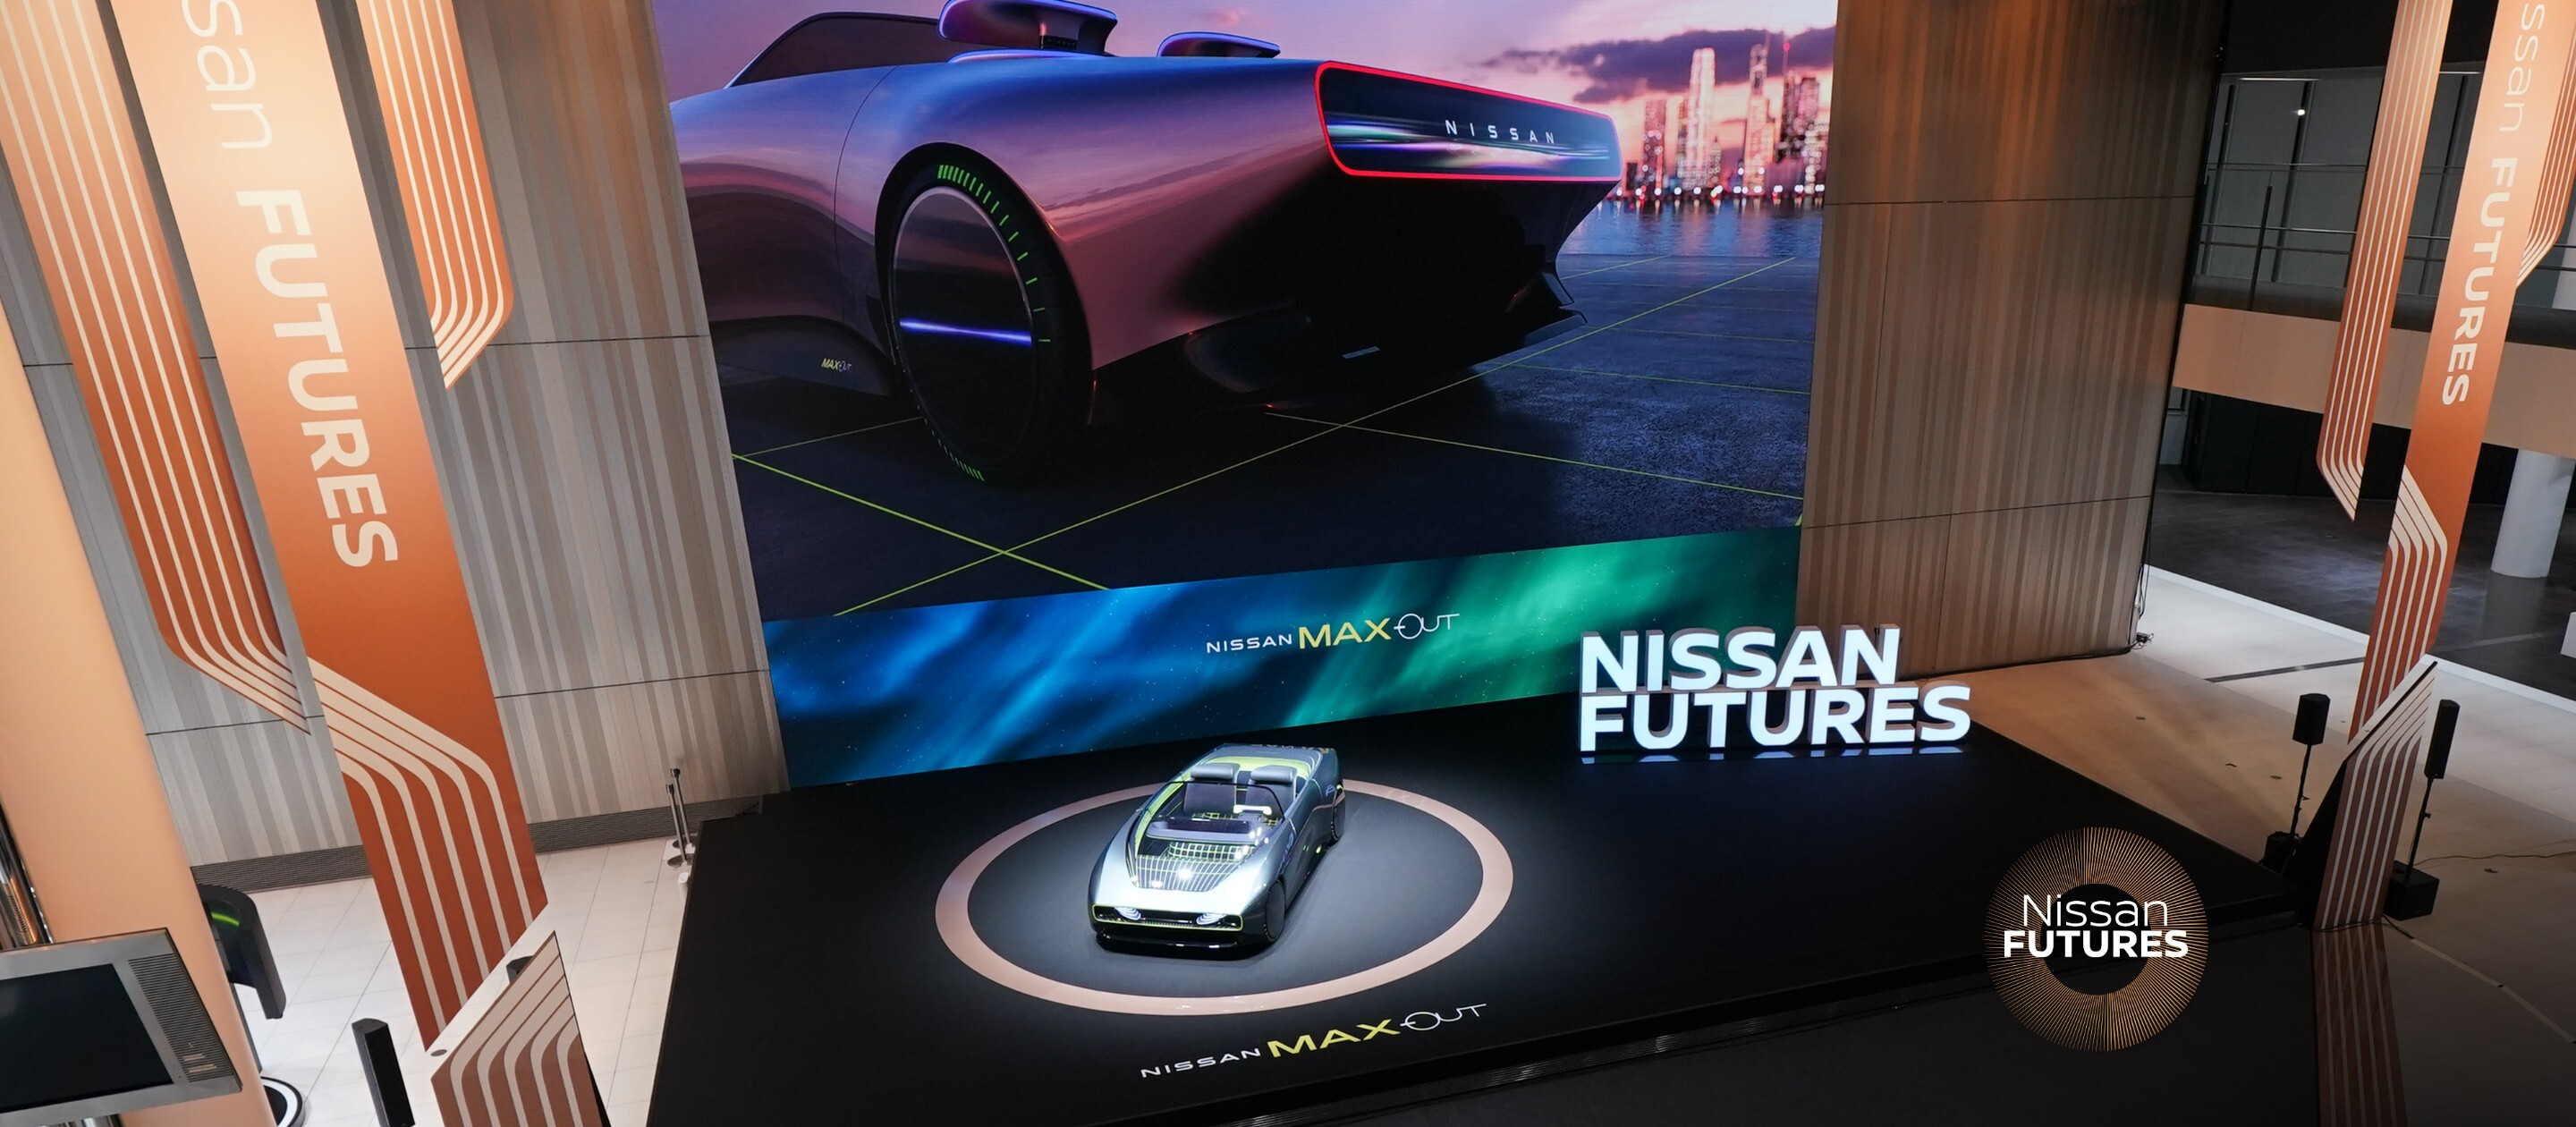 Nissan Futures desvenda inovações na mobilidade sustentável